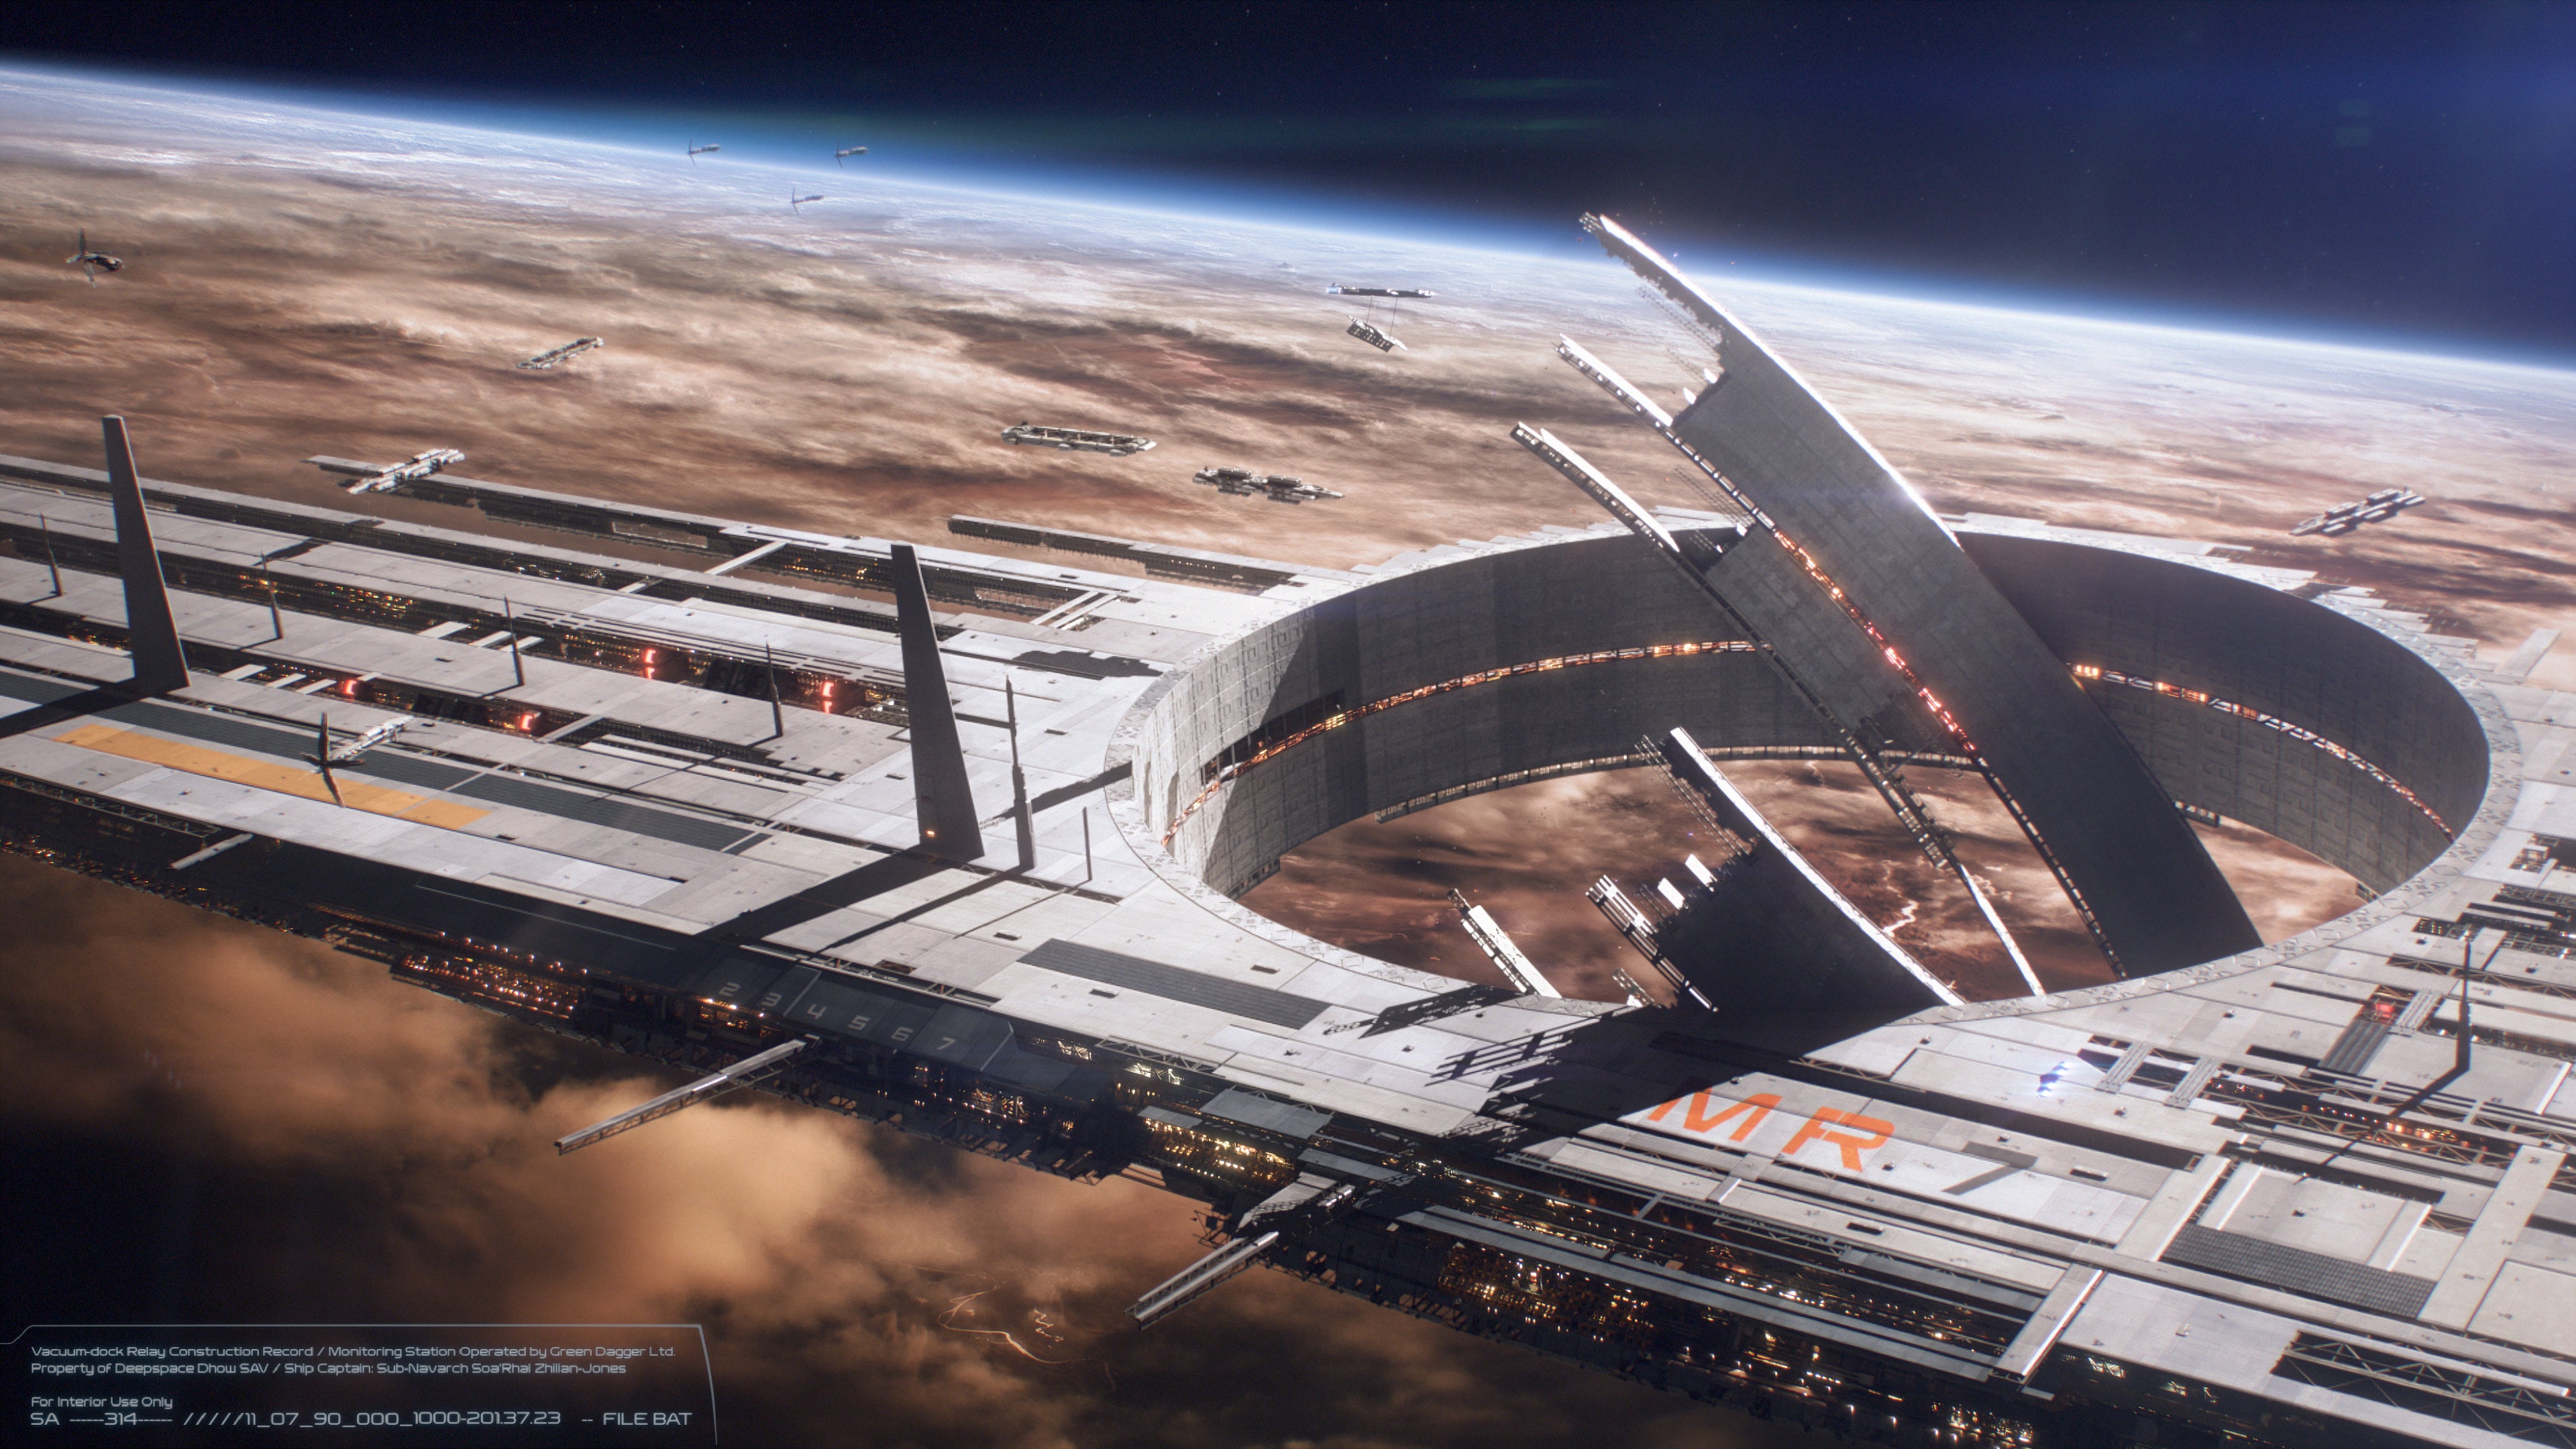 Mass Effect 5 development ‘going very well’, BioWare releases new teaser